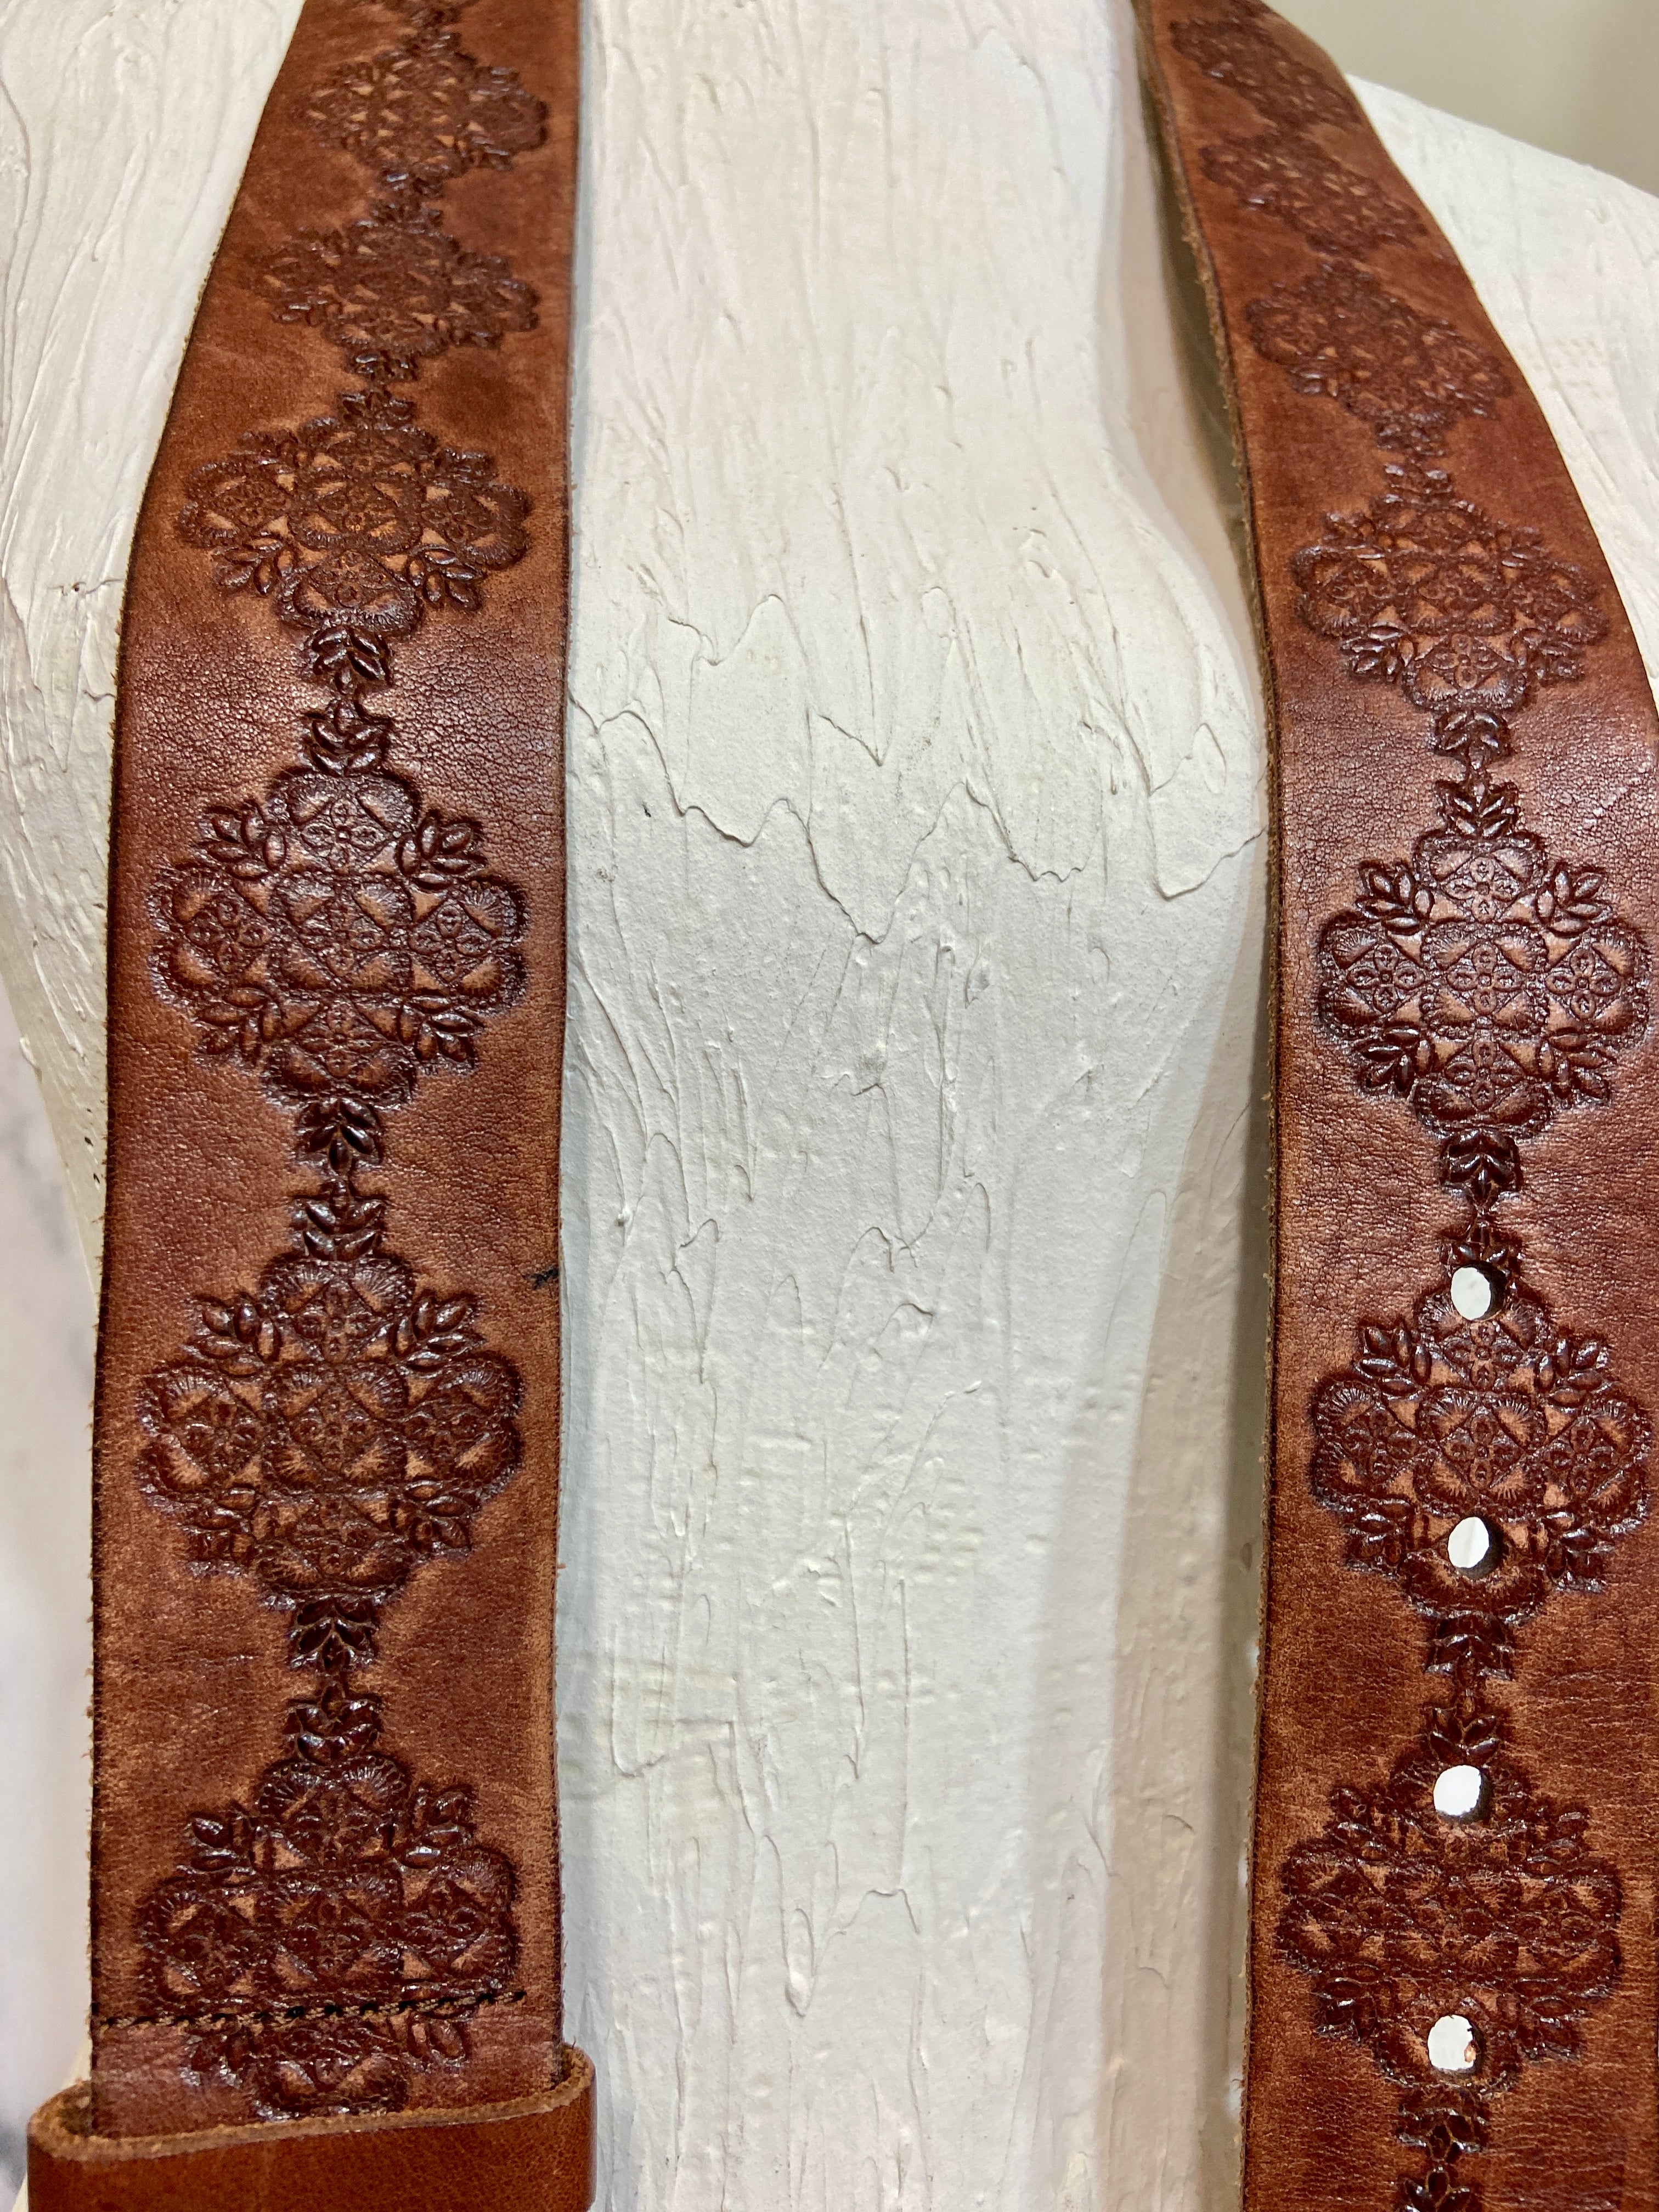 Vintage western leather belt